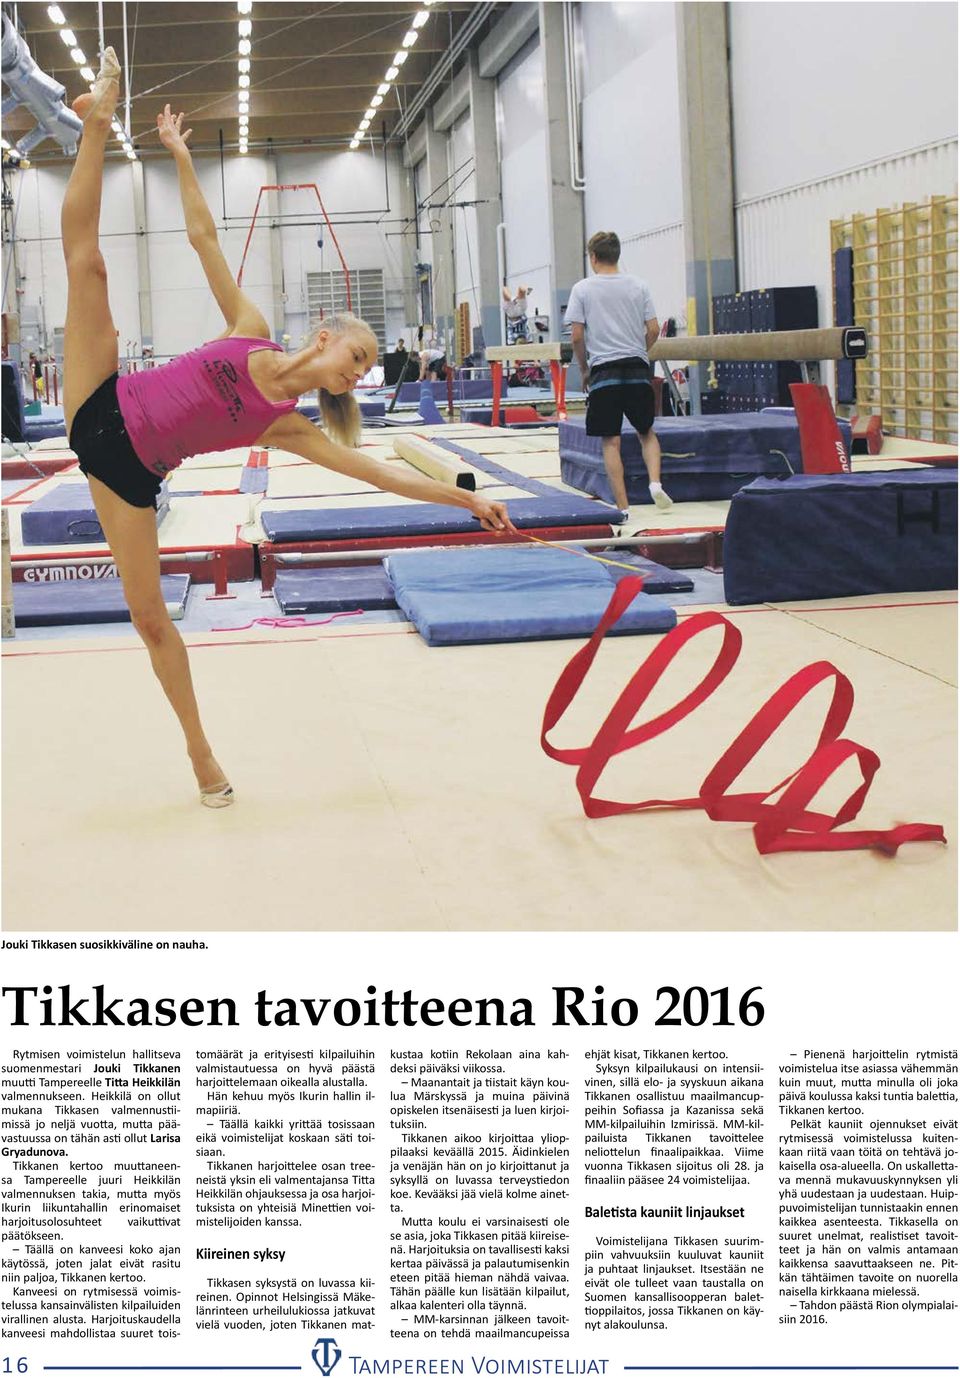 Tikkanen kertoo muuttaneensa Tampereelle juuri Heikkilän valmennuksen takia, mutta myös Ikurin liikuntahallin erinomaiset harjoitusolosuhteet vaikuttivat päätökseen.